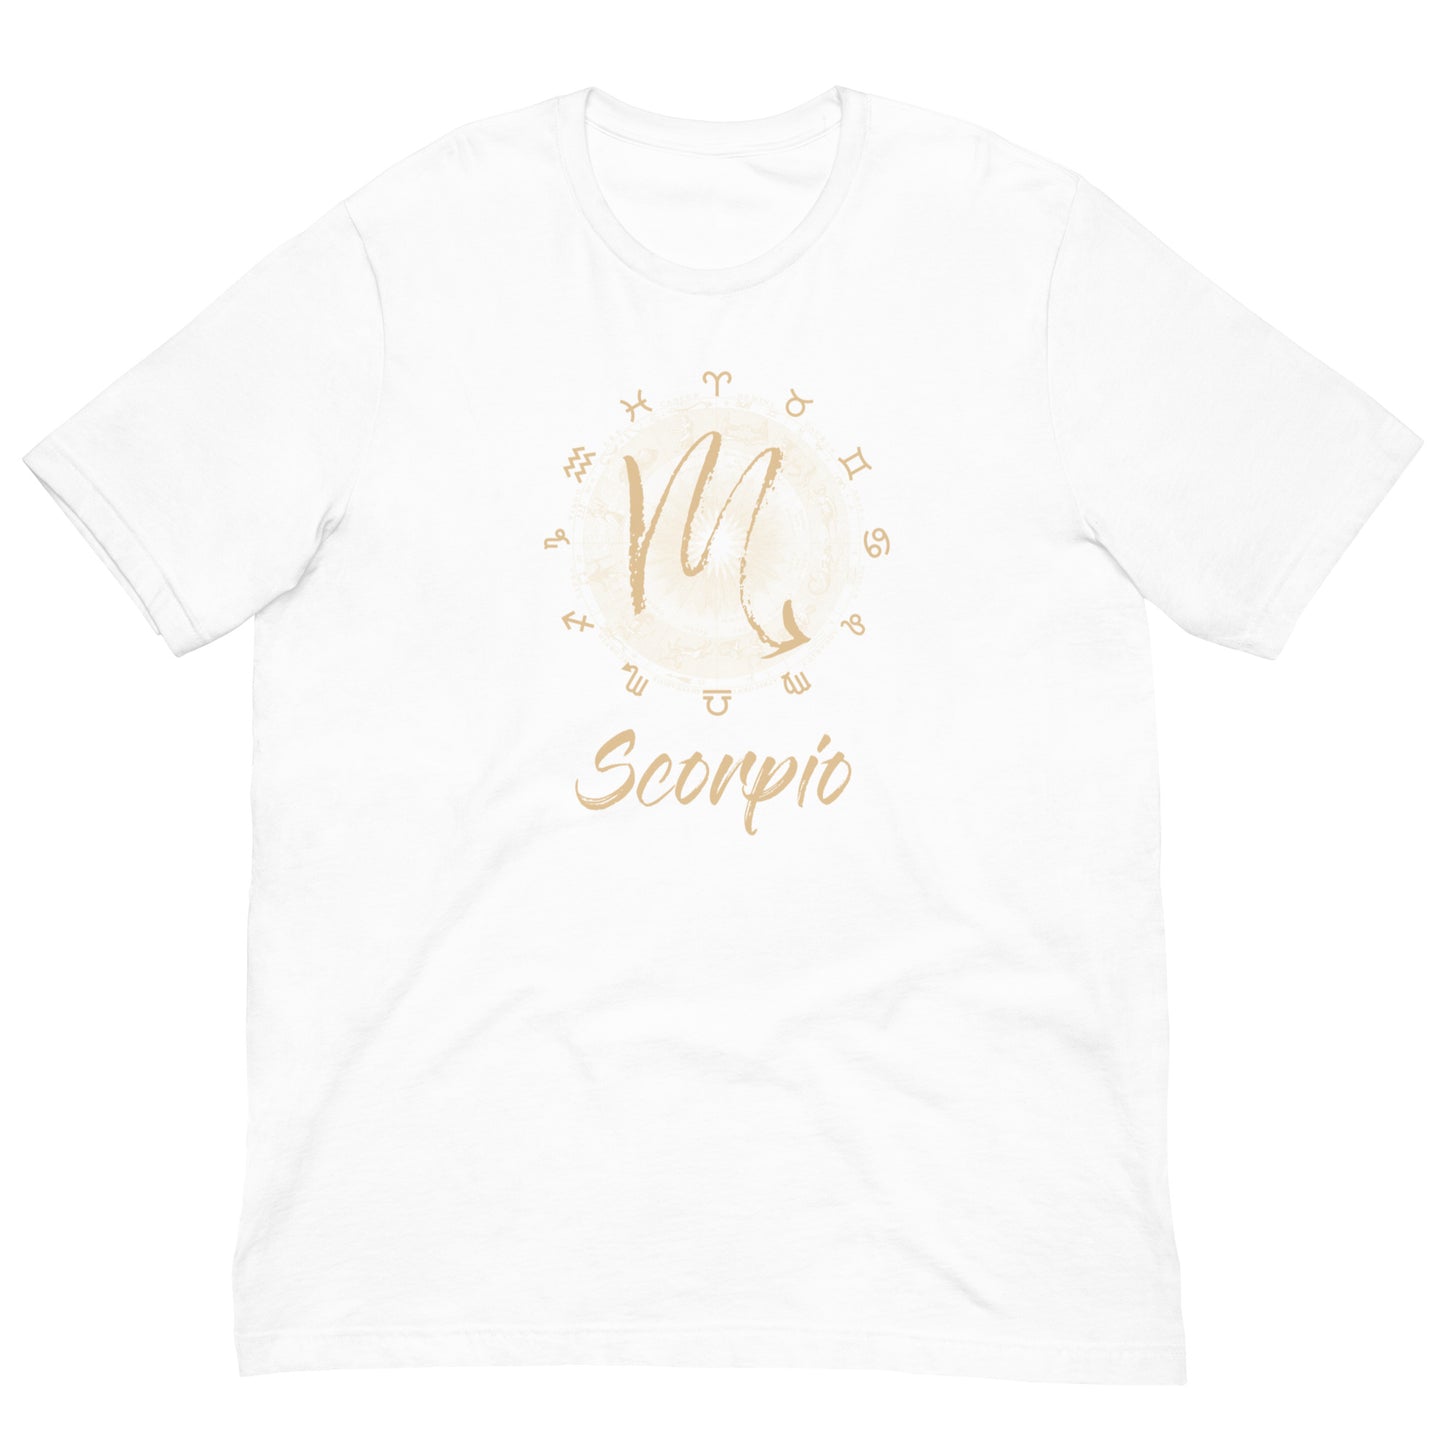 Scorpio Season Premium T-Shirt